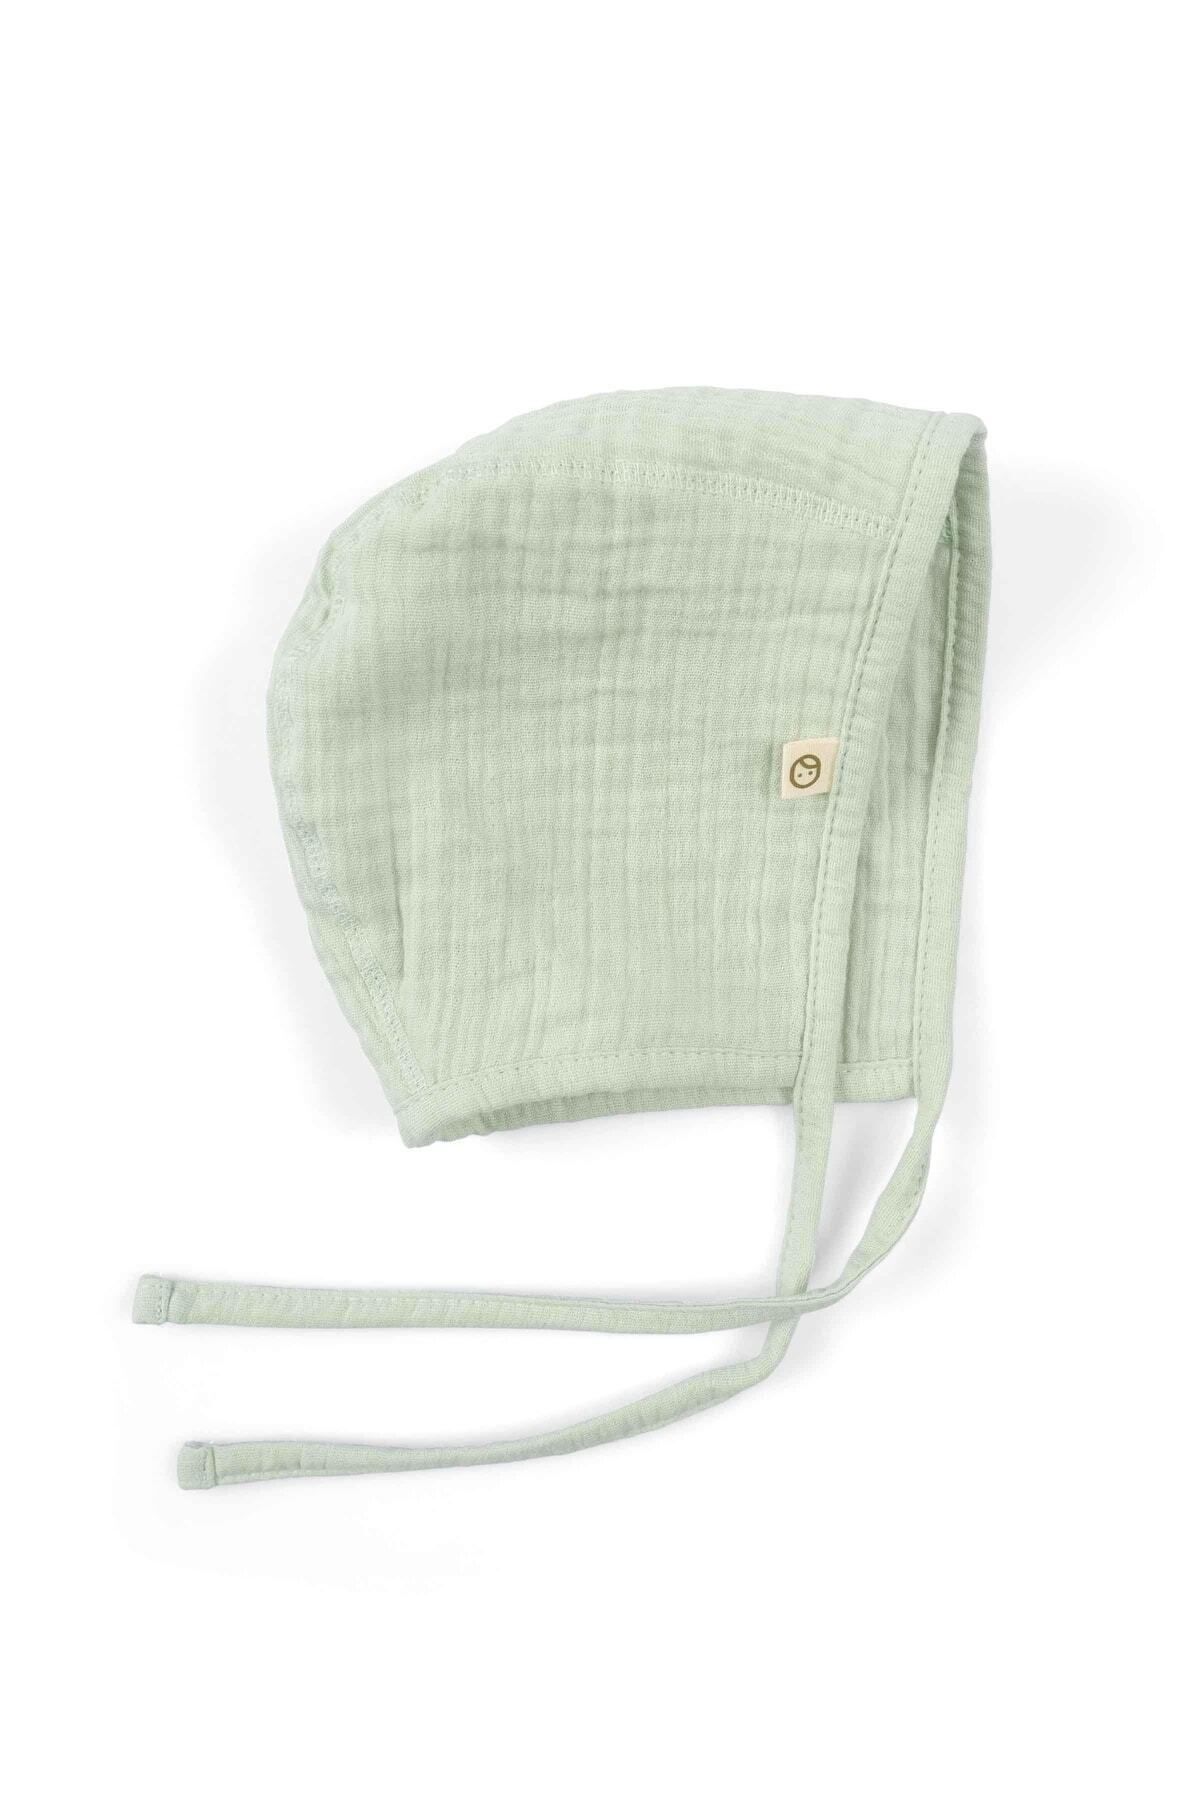 Little Gusto Müslin İngiliz Bebek Şapka Yeşil Organik Pamuk